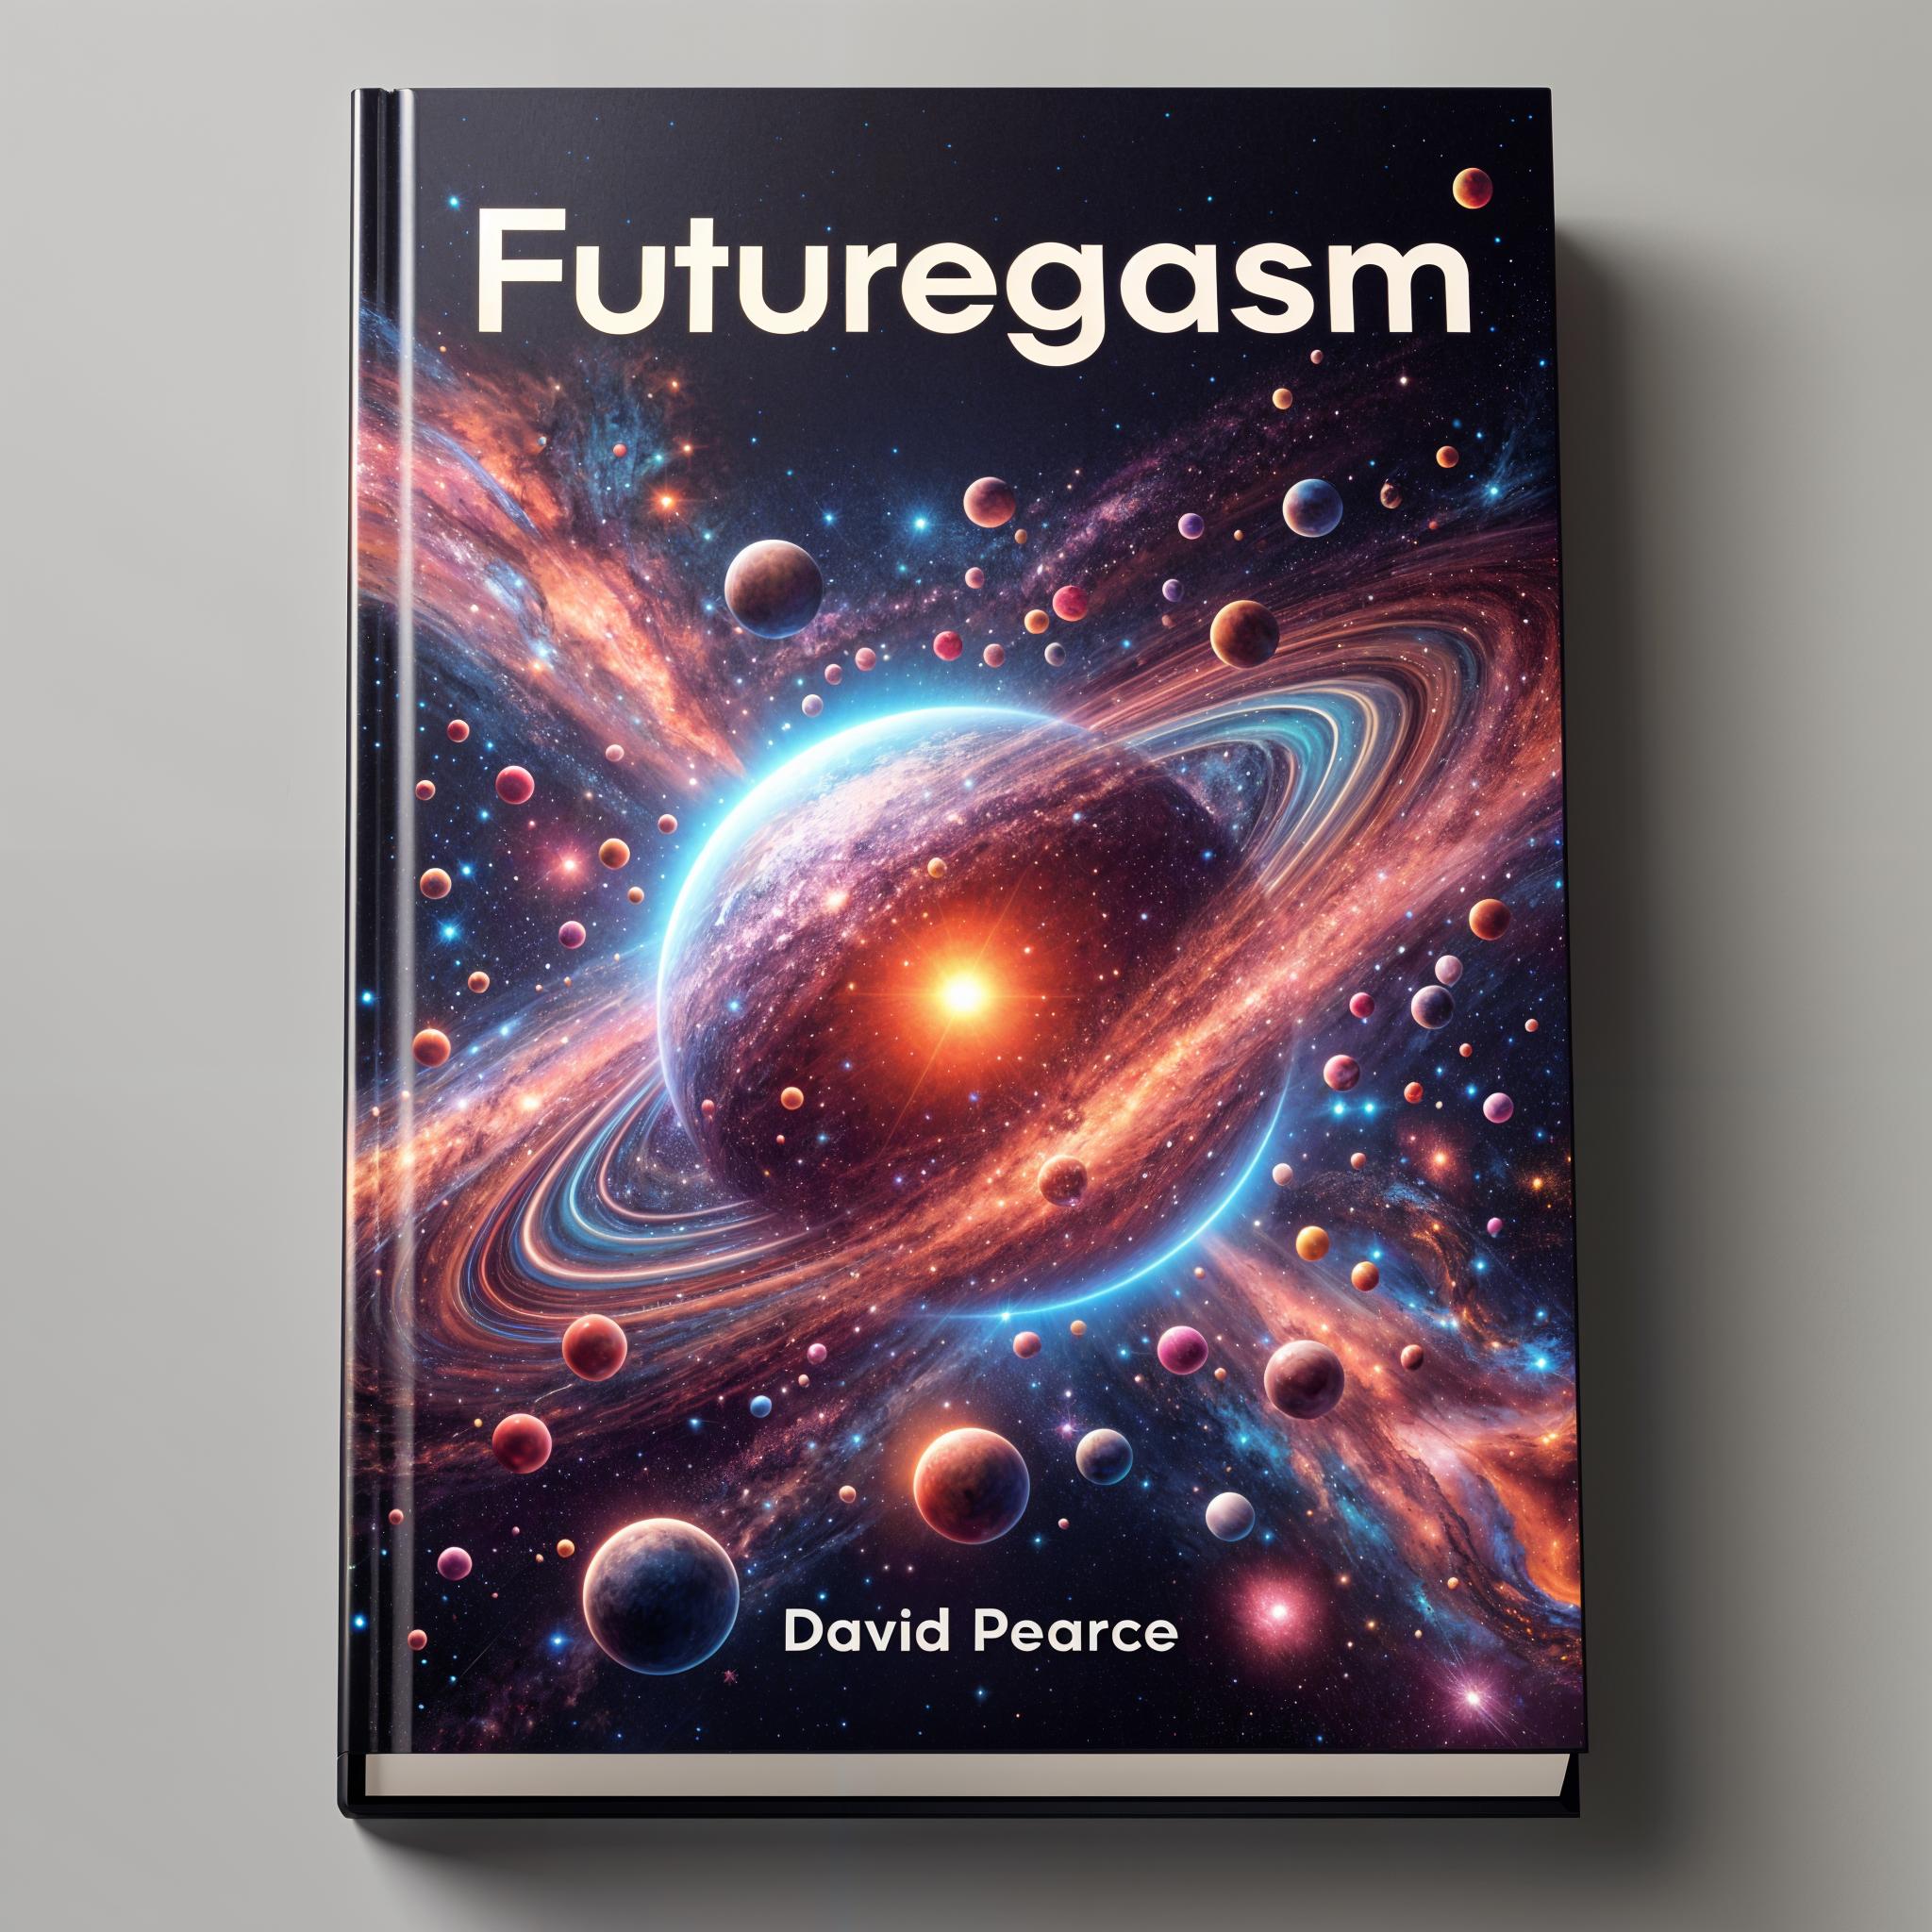 Futuregasm by David Pearce